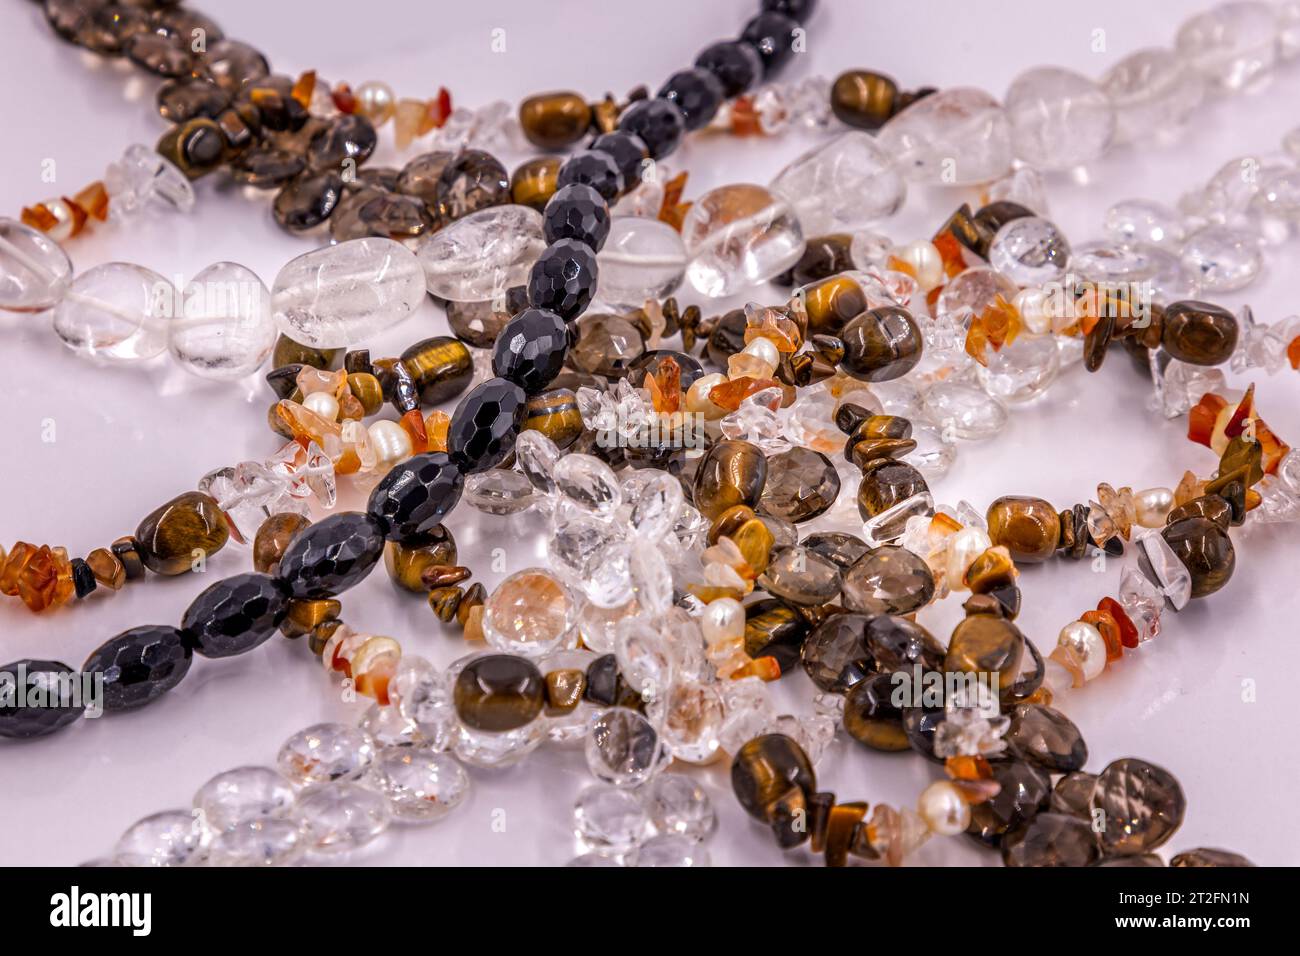 Collection de colliers en pierres semi-précieuses sur une surface blanche Banque D'Images